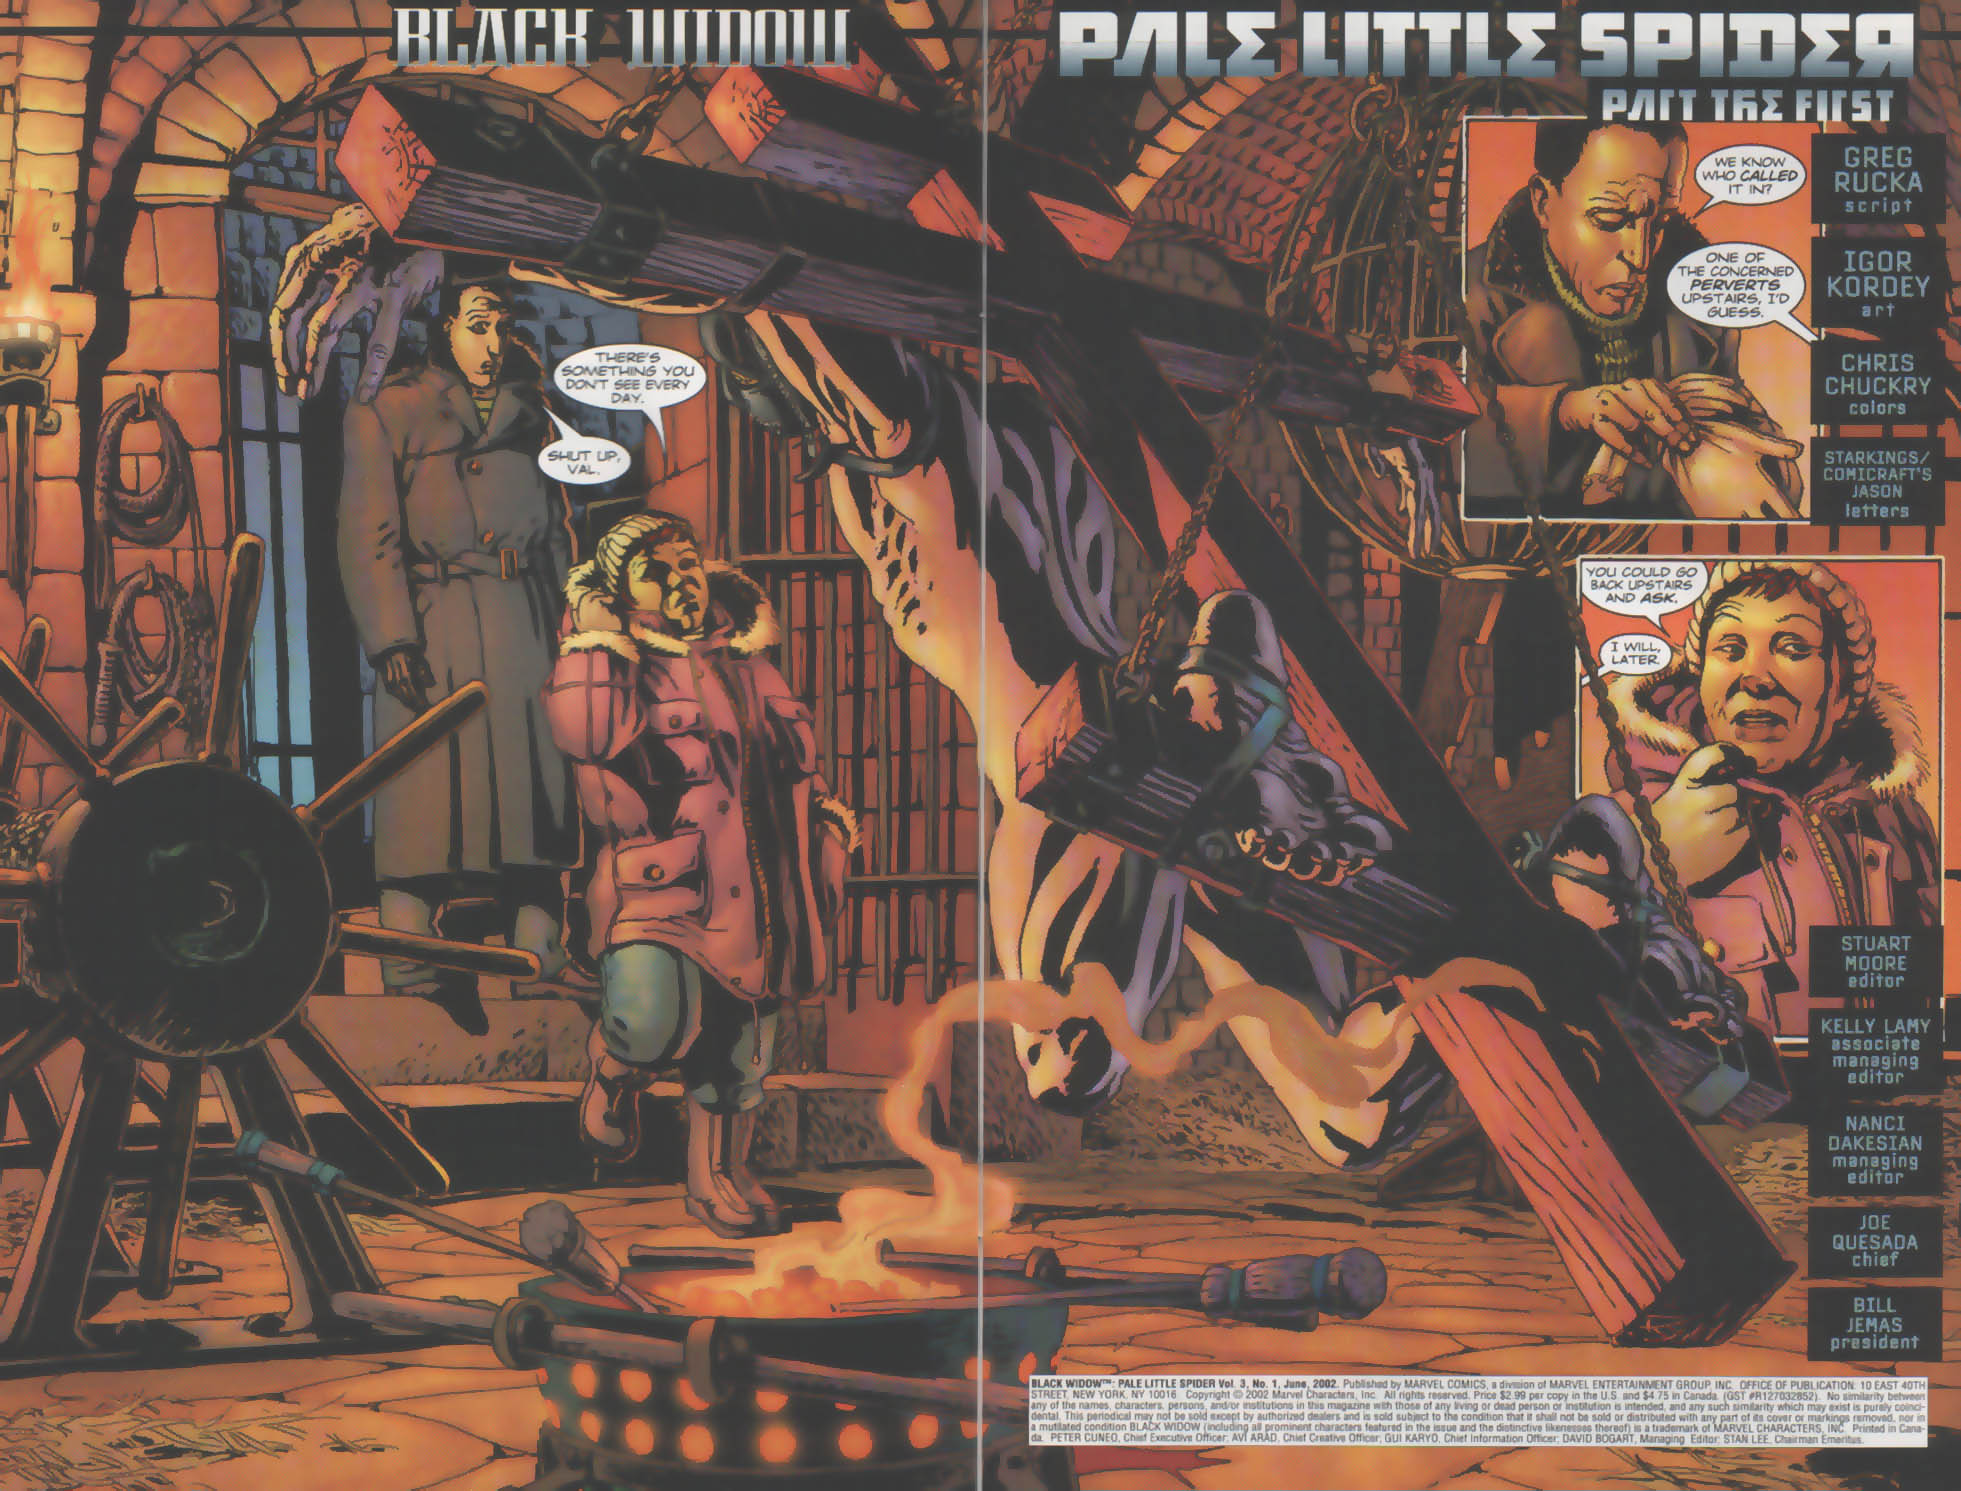 Black Widow: Pale Little Spider 1 Page 2